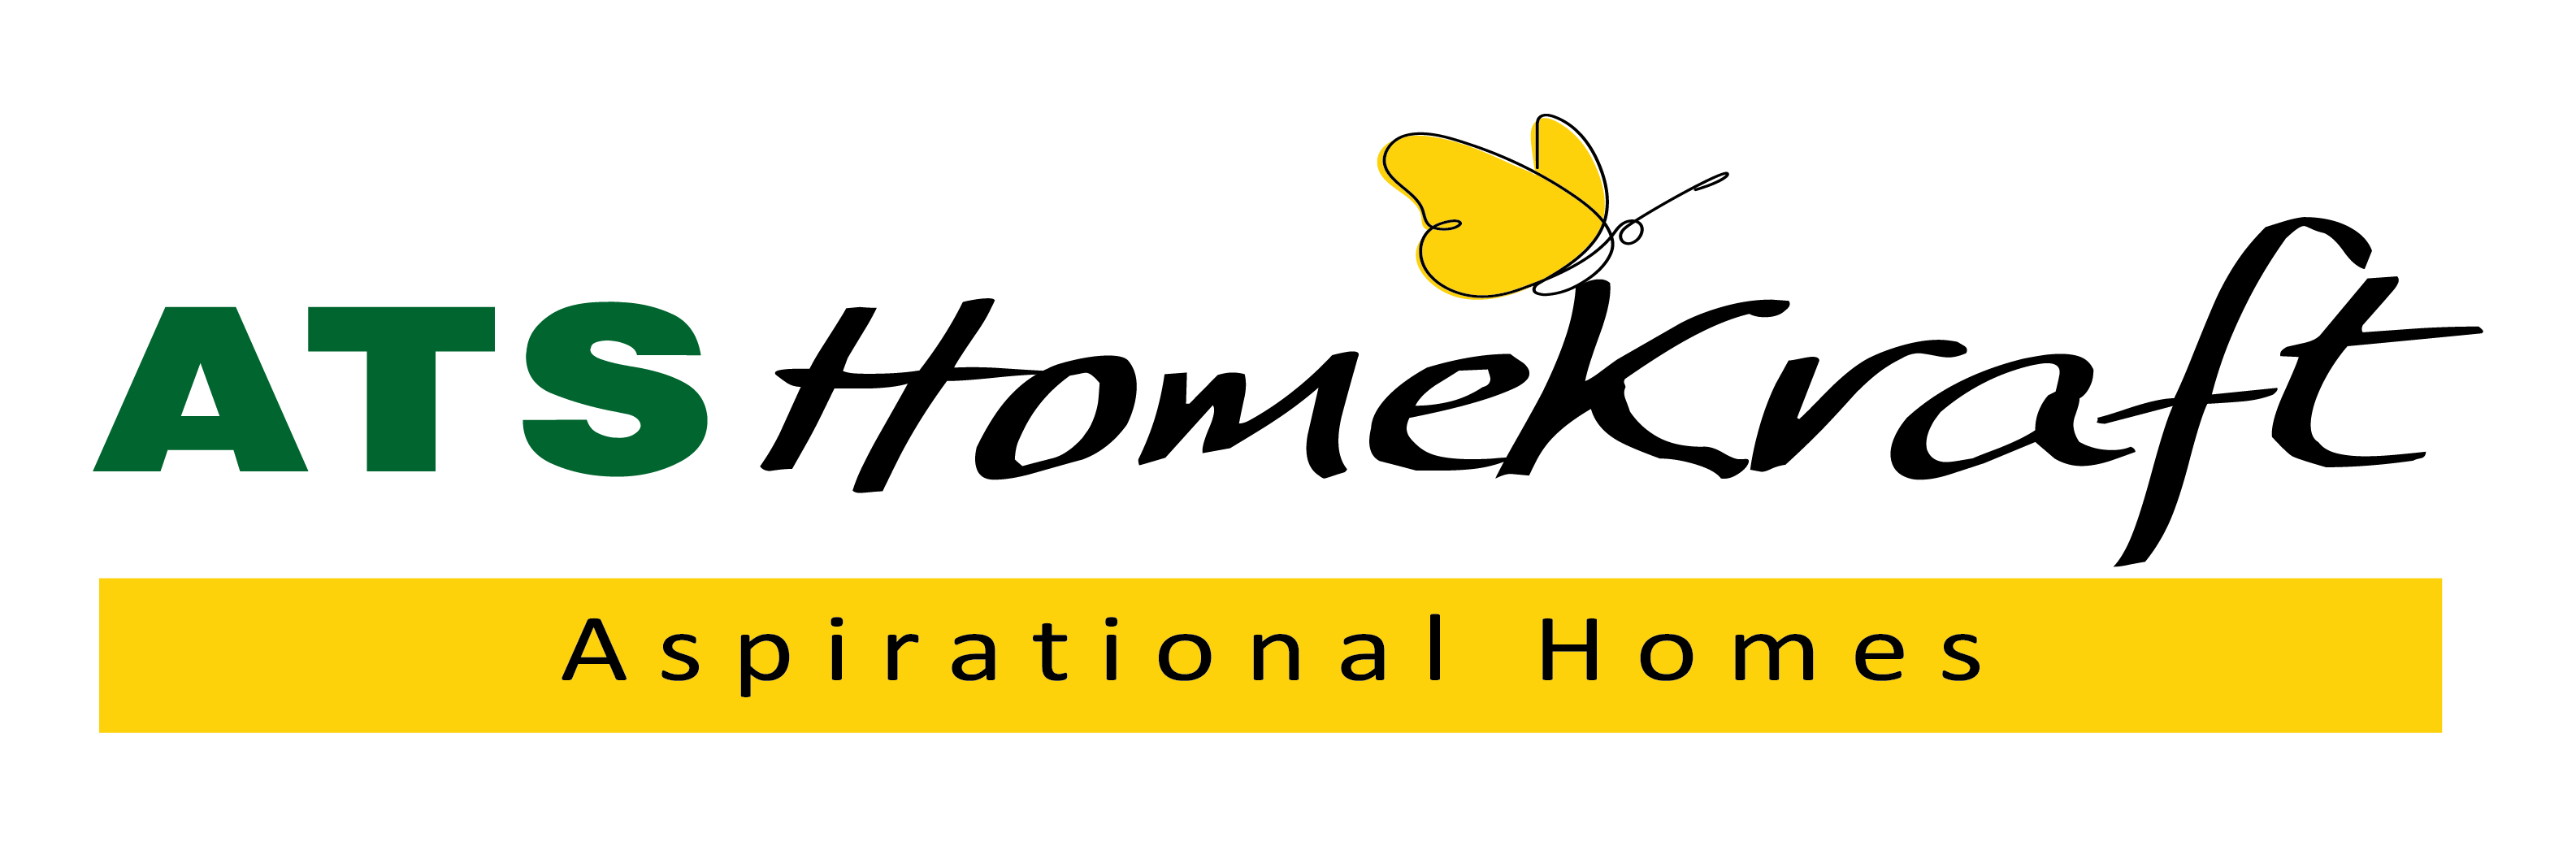 HomeKraft ATS